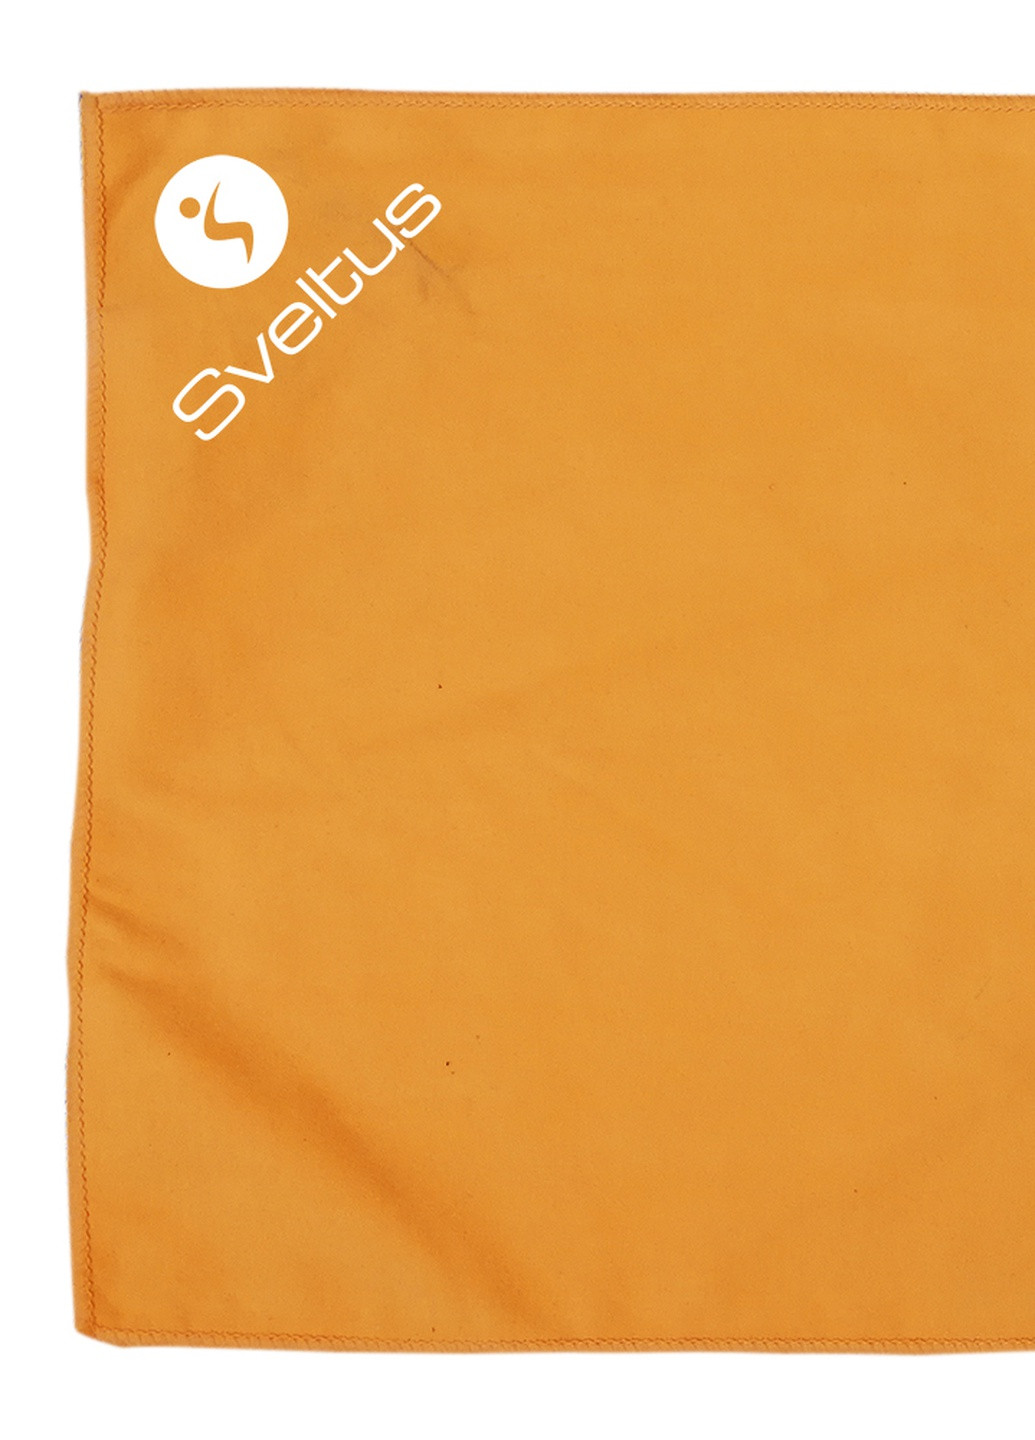 Sveltus рушник із мікрофібри помаранчевий 130x80 см (slts-9505) однотонний помаранчевий виробництво - Франція